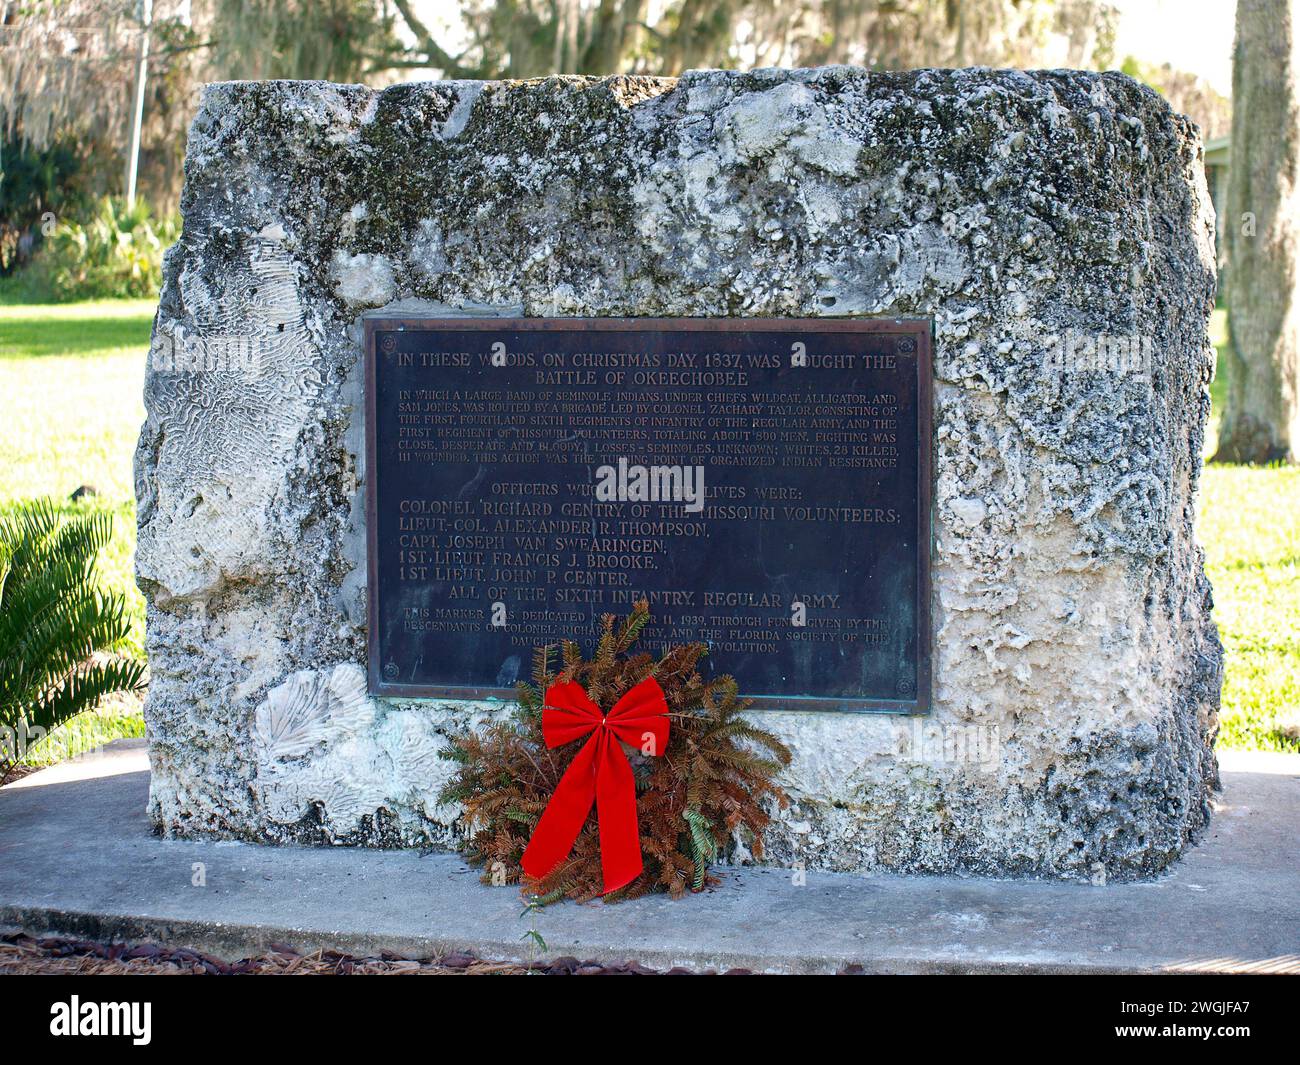 Okeechobee, Florida, Stati Uniti - 30 dicembre 2015: Marcatore sul sito della battaglia di Okeechobee durante la seconda guerra Seminole. Foto Stock